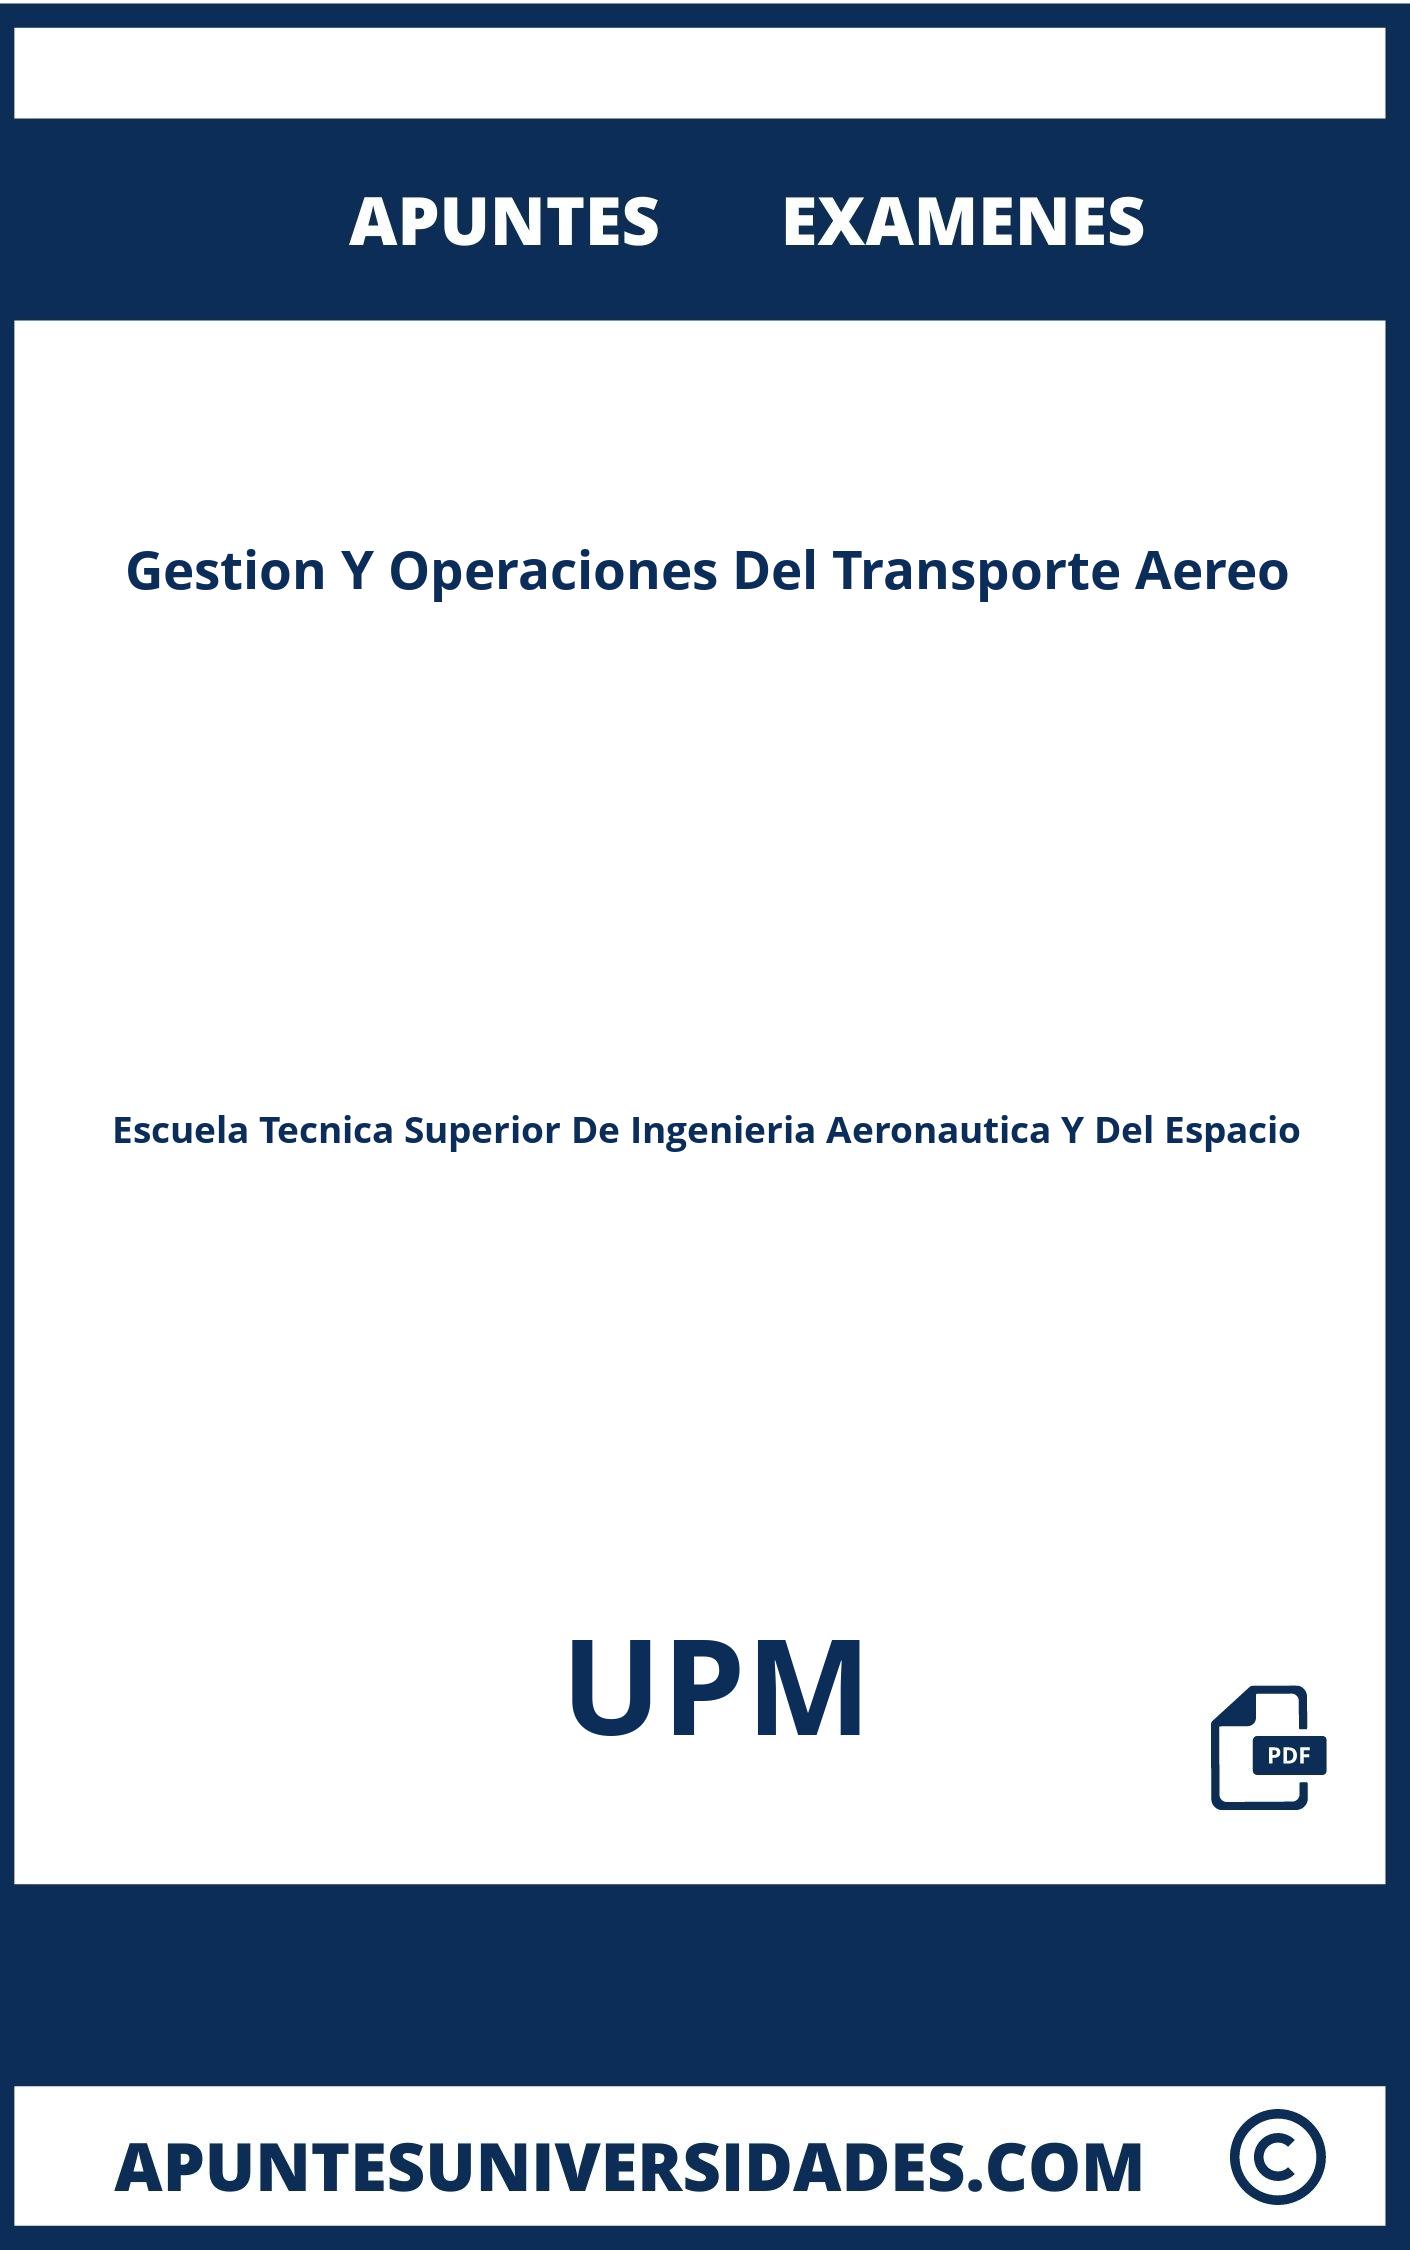 Examenes y Apuntes Gestion Y Operaciones Del Transporte Aereo UPM